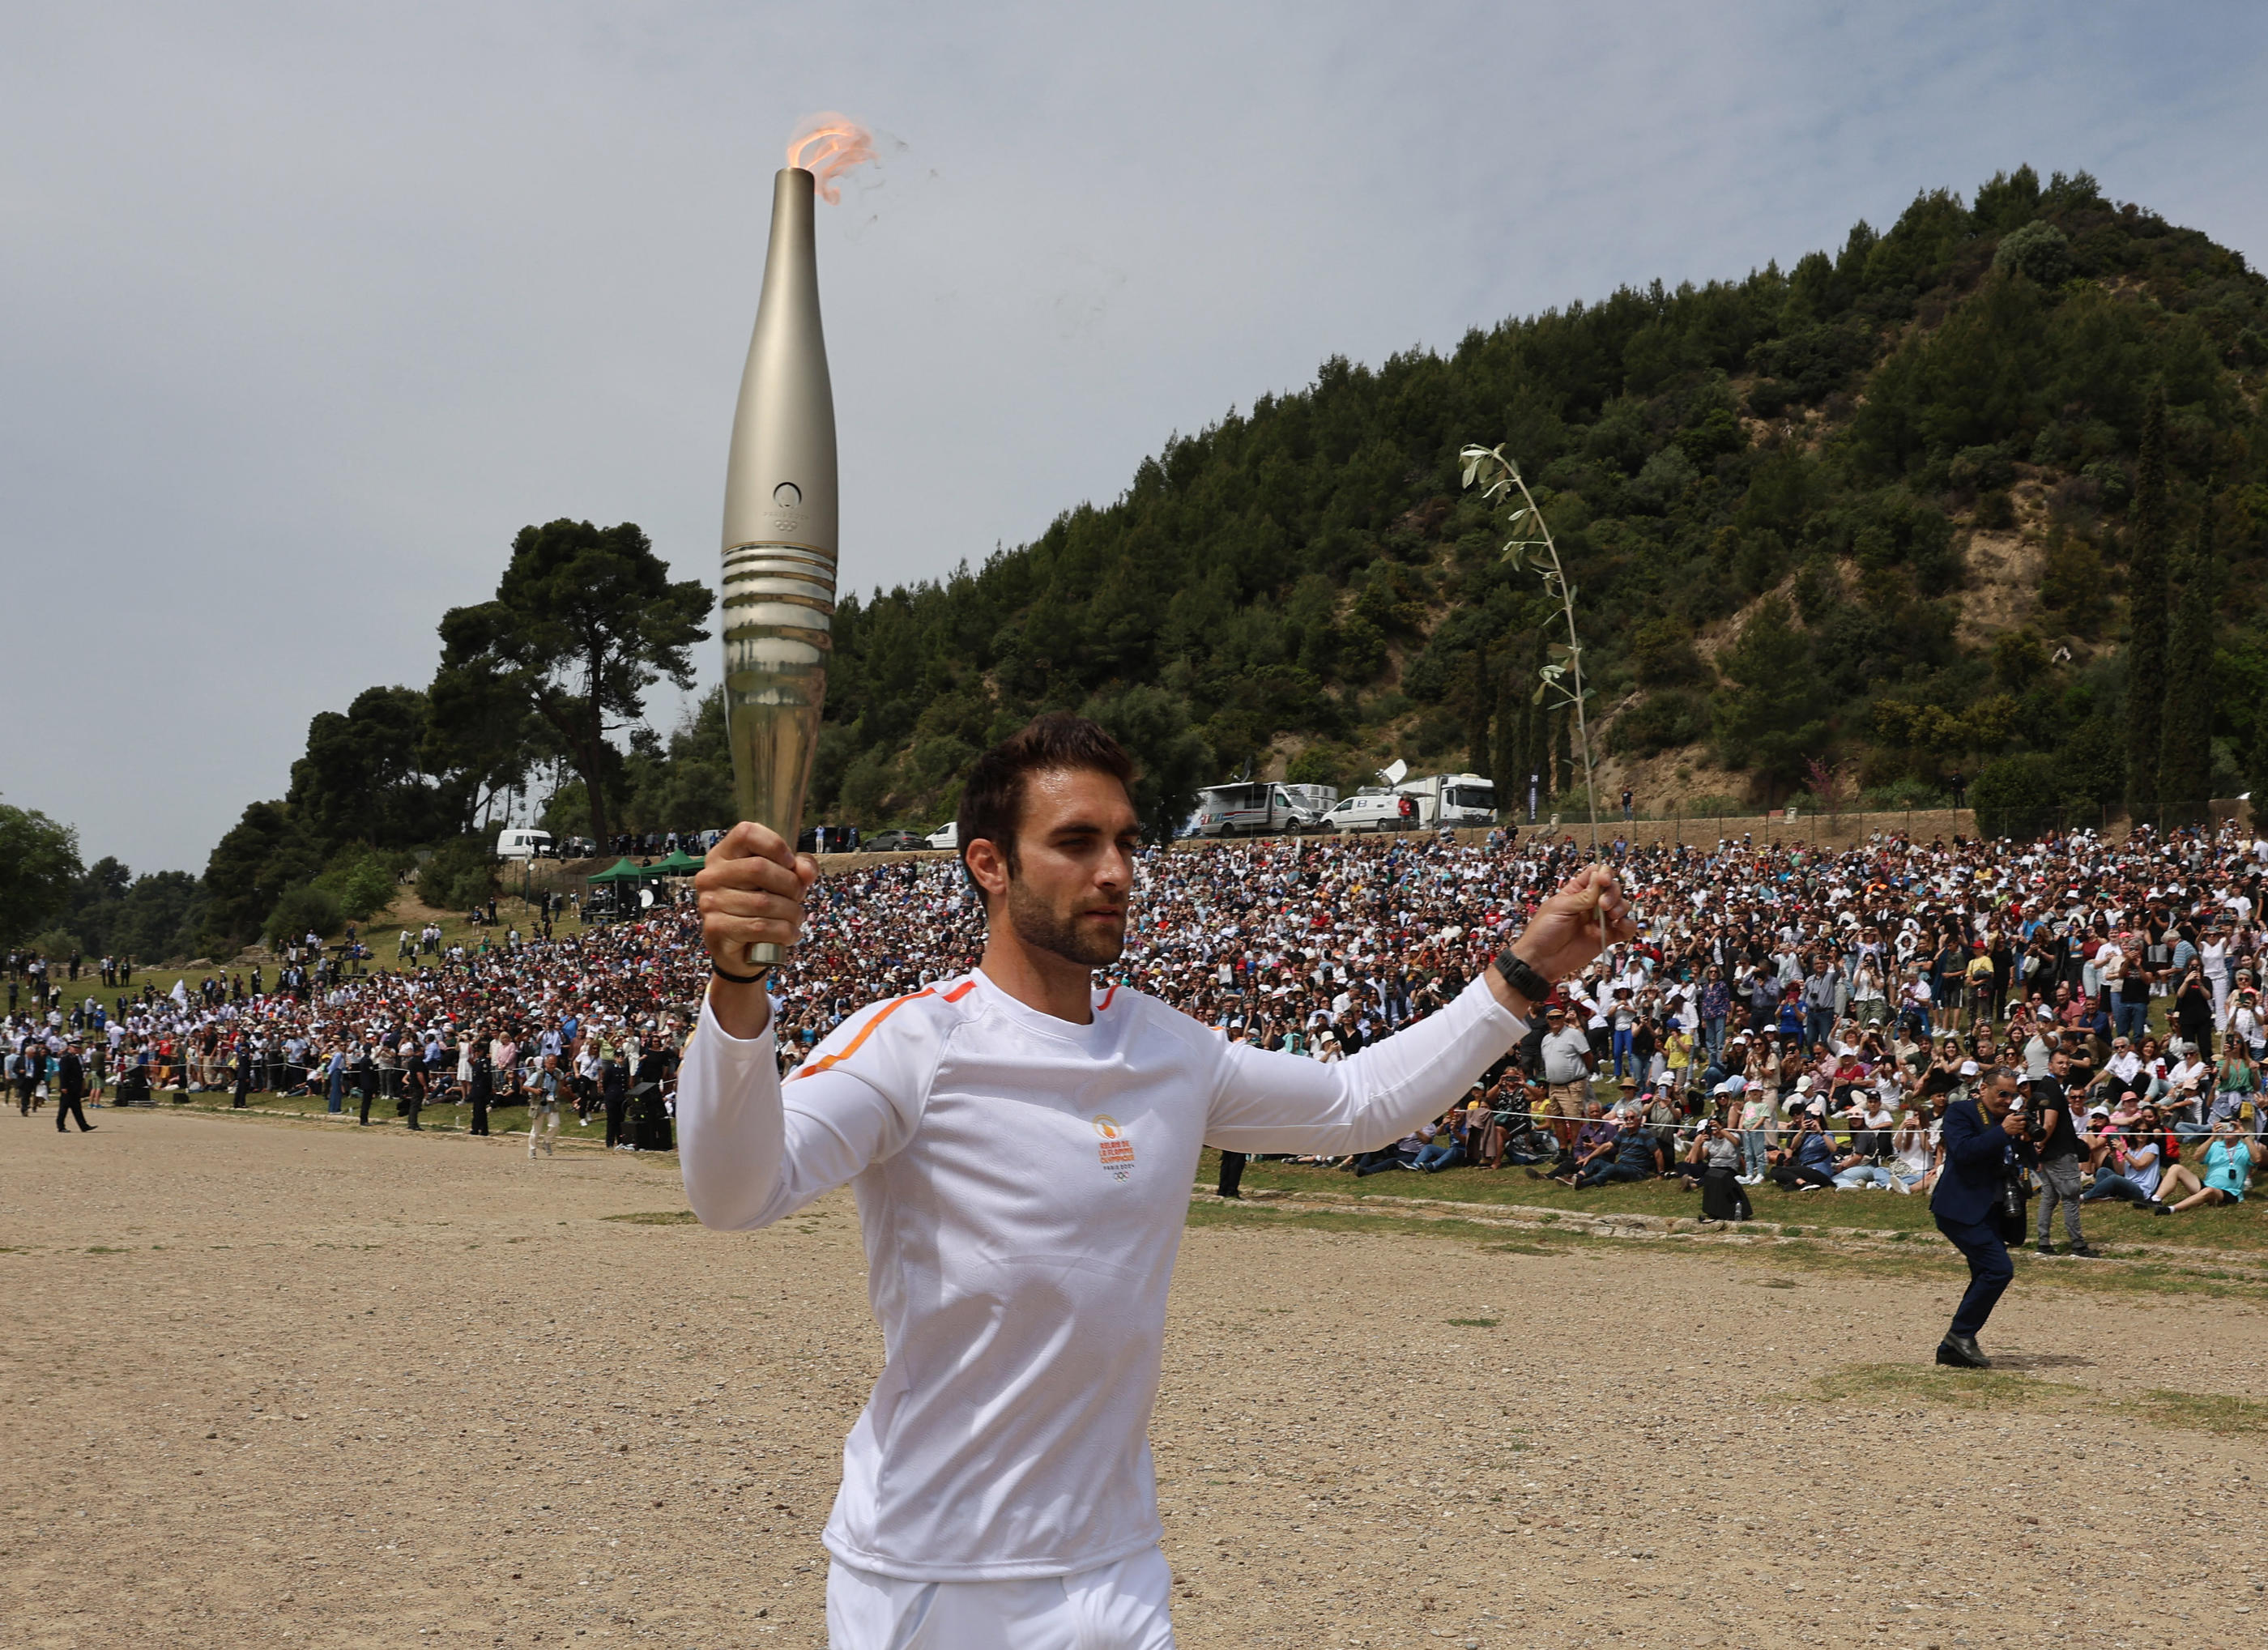 Le rameur grec Stefanos Ntouskos, champion olympique à Tokyo, a été le premier des relayeurs de la flamme olympique des Jeux de Paris ce mardi à Olympie. Reuters/Louisa Gouliamaki